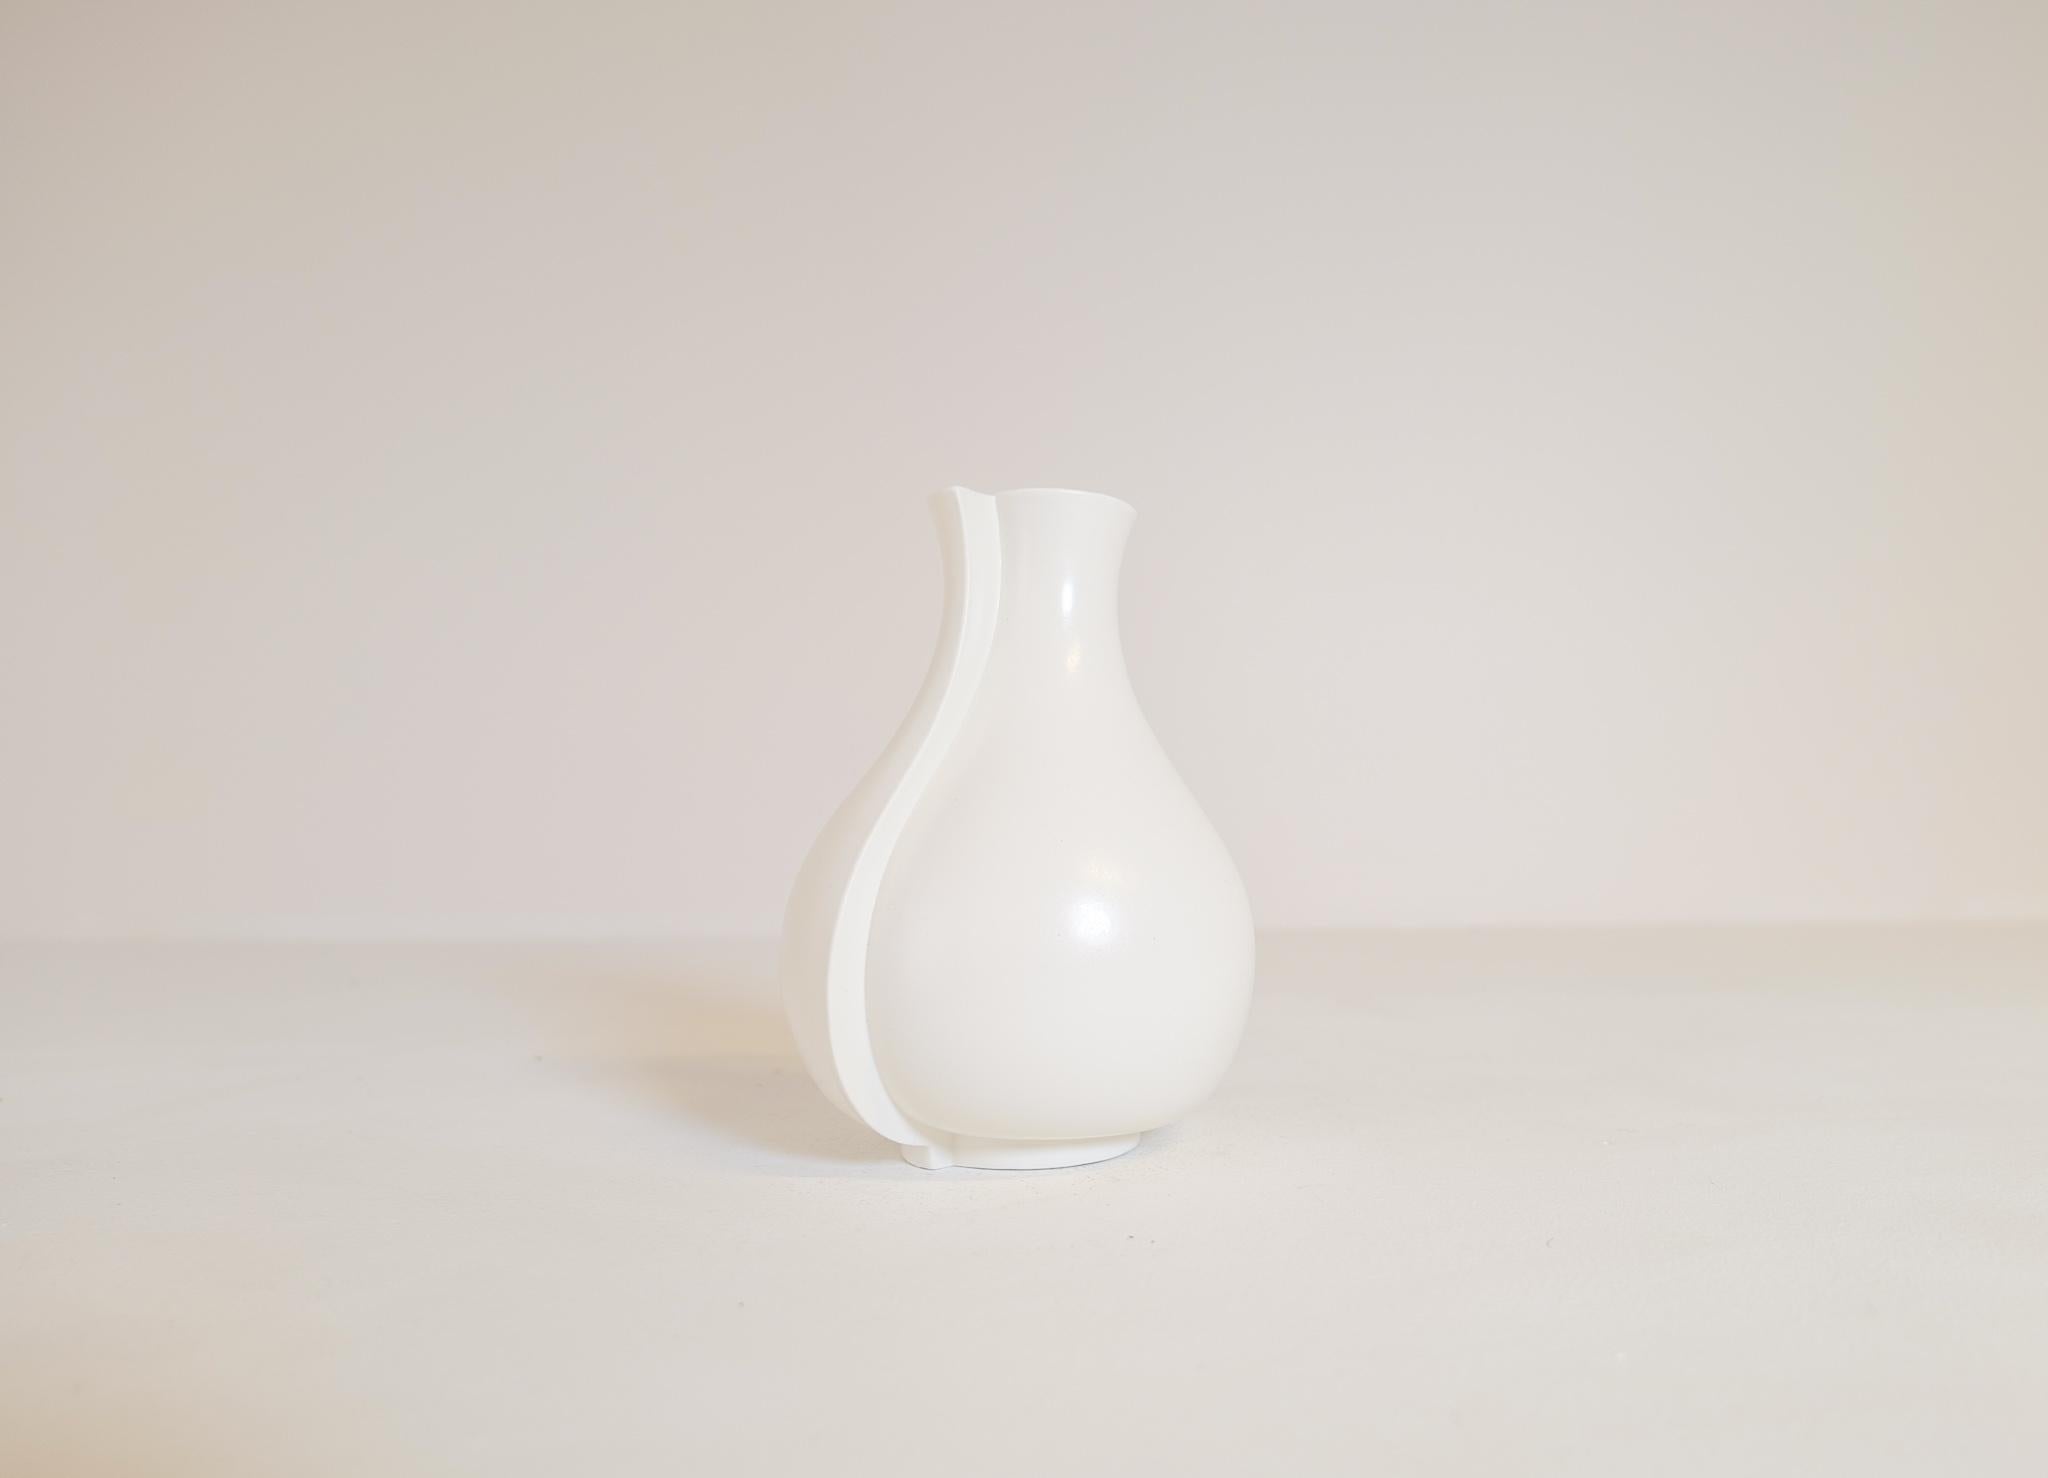 Ce vase abstrait en grès blanc mat, nommé Surrea (surréaliste), a été conçu par Wilhelm Kåge dans les années 1950 et fabriqué à Gustavsberg, en Suède. Ce vase conviendra parfaitement à une maison moderne. 

Nous avons plus de ces modèles surrea